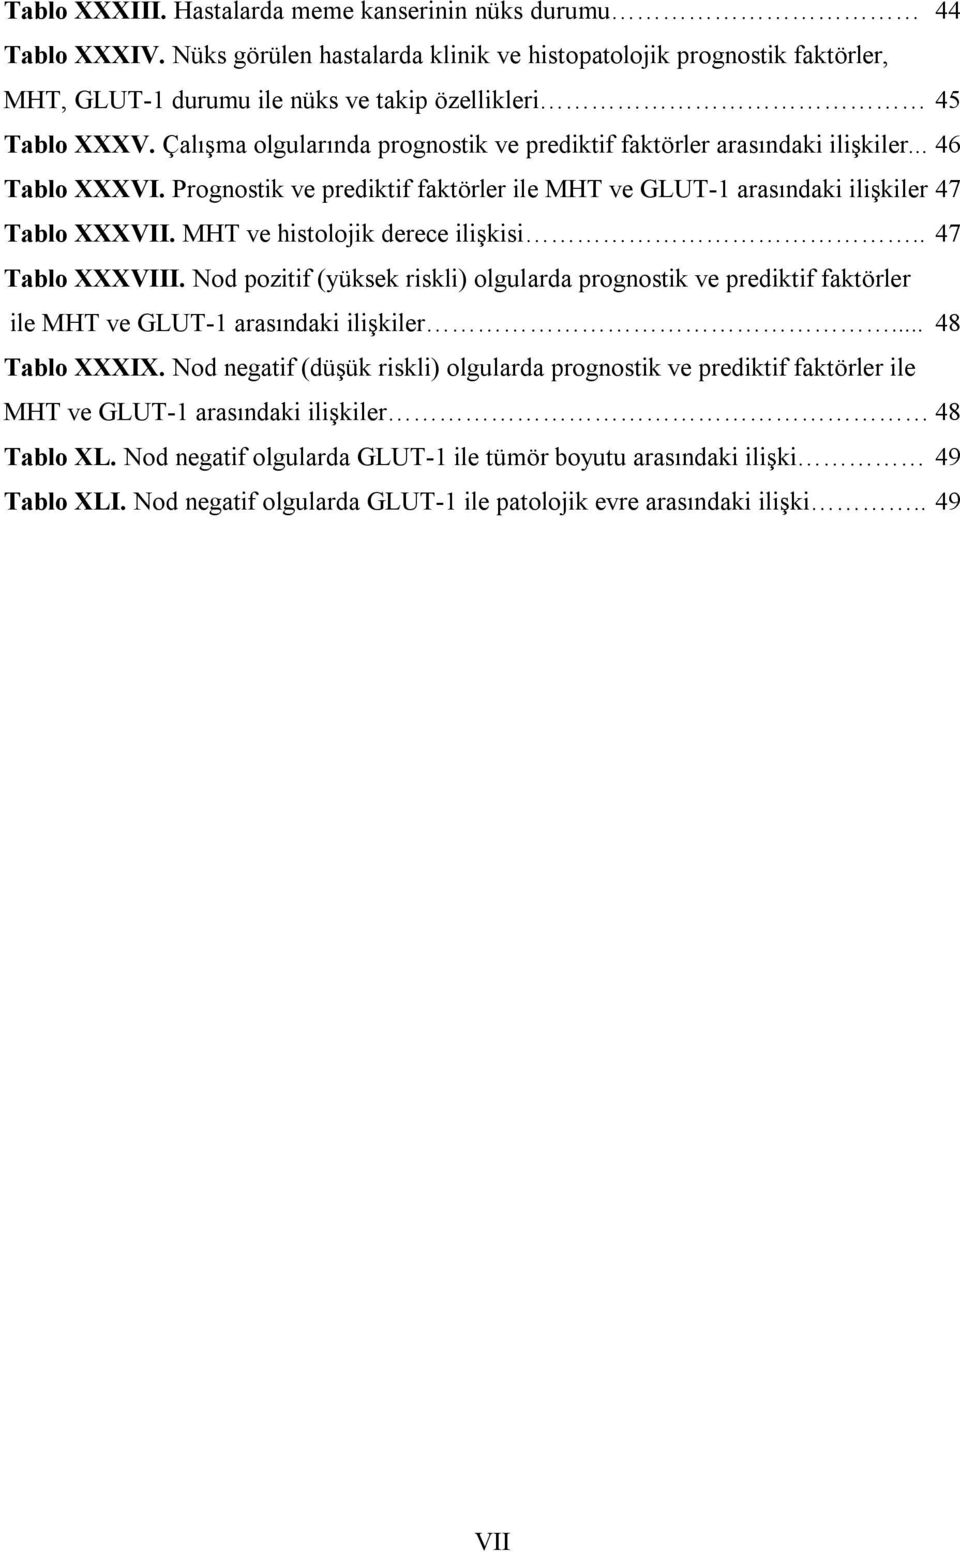 Çalışma olgularında prognostik ve prediktif faktörler arasındaki ilişkiler... 46 Tablo XXXVI. Prognostik ve prediktif faktörler ile MHT ve GLUT- arasındaki ilişkiler 47 Tablo XXXVII.